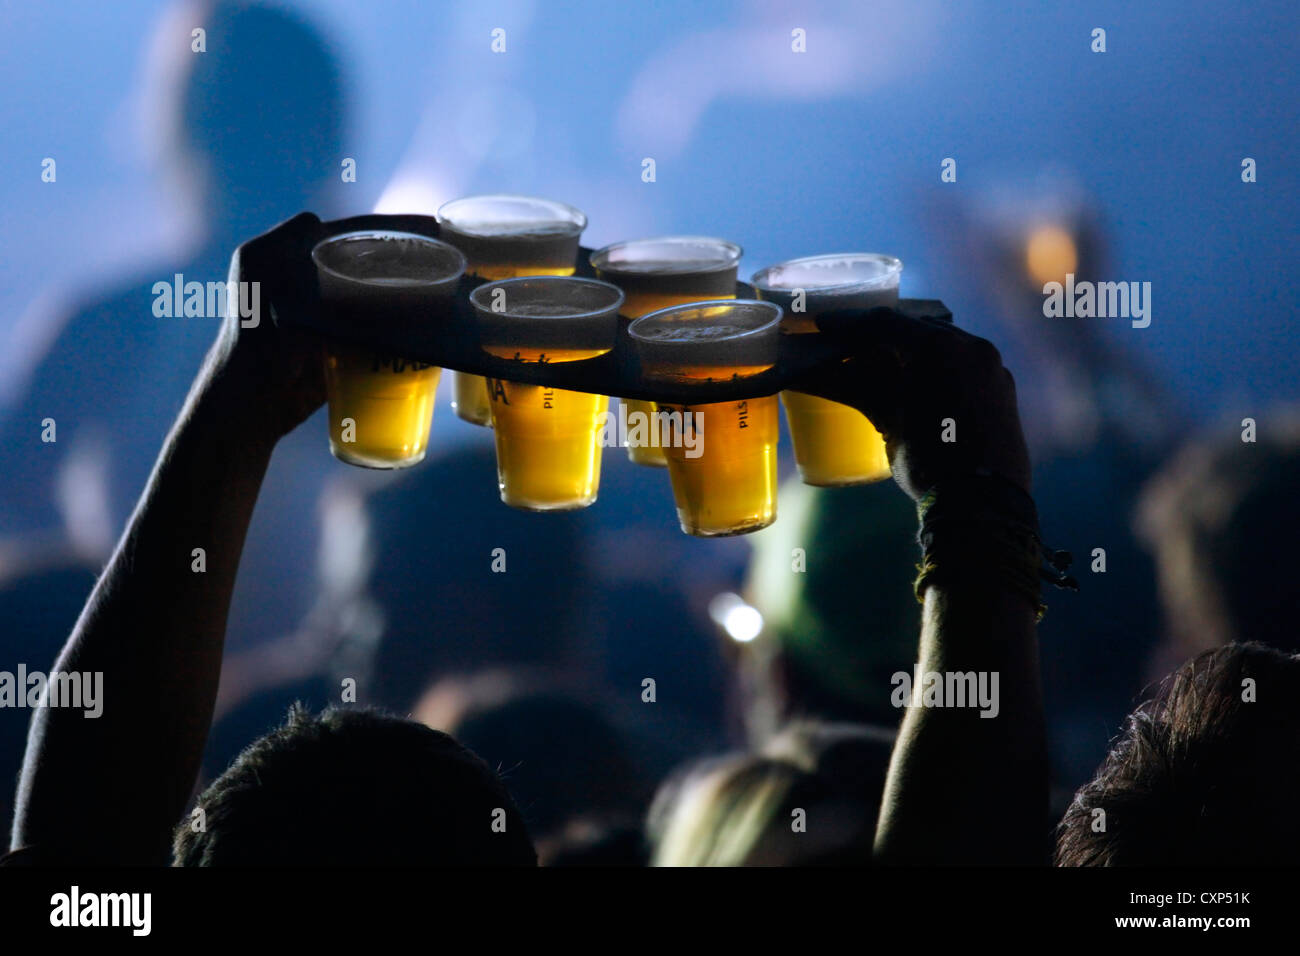 Au cours de l'ambiance concert rock live et man pintes de bière dans des gobelets en plastique à des amis parmi les spectateurs / foule, Belgique Banque D'Images